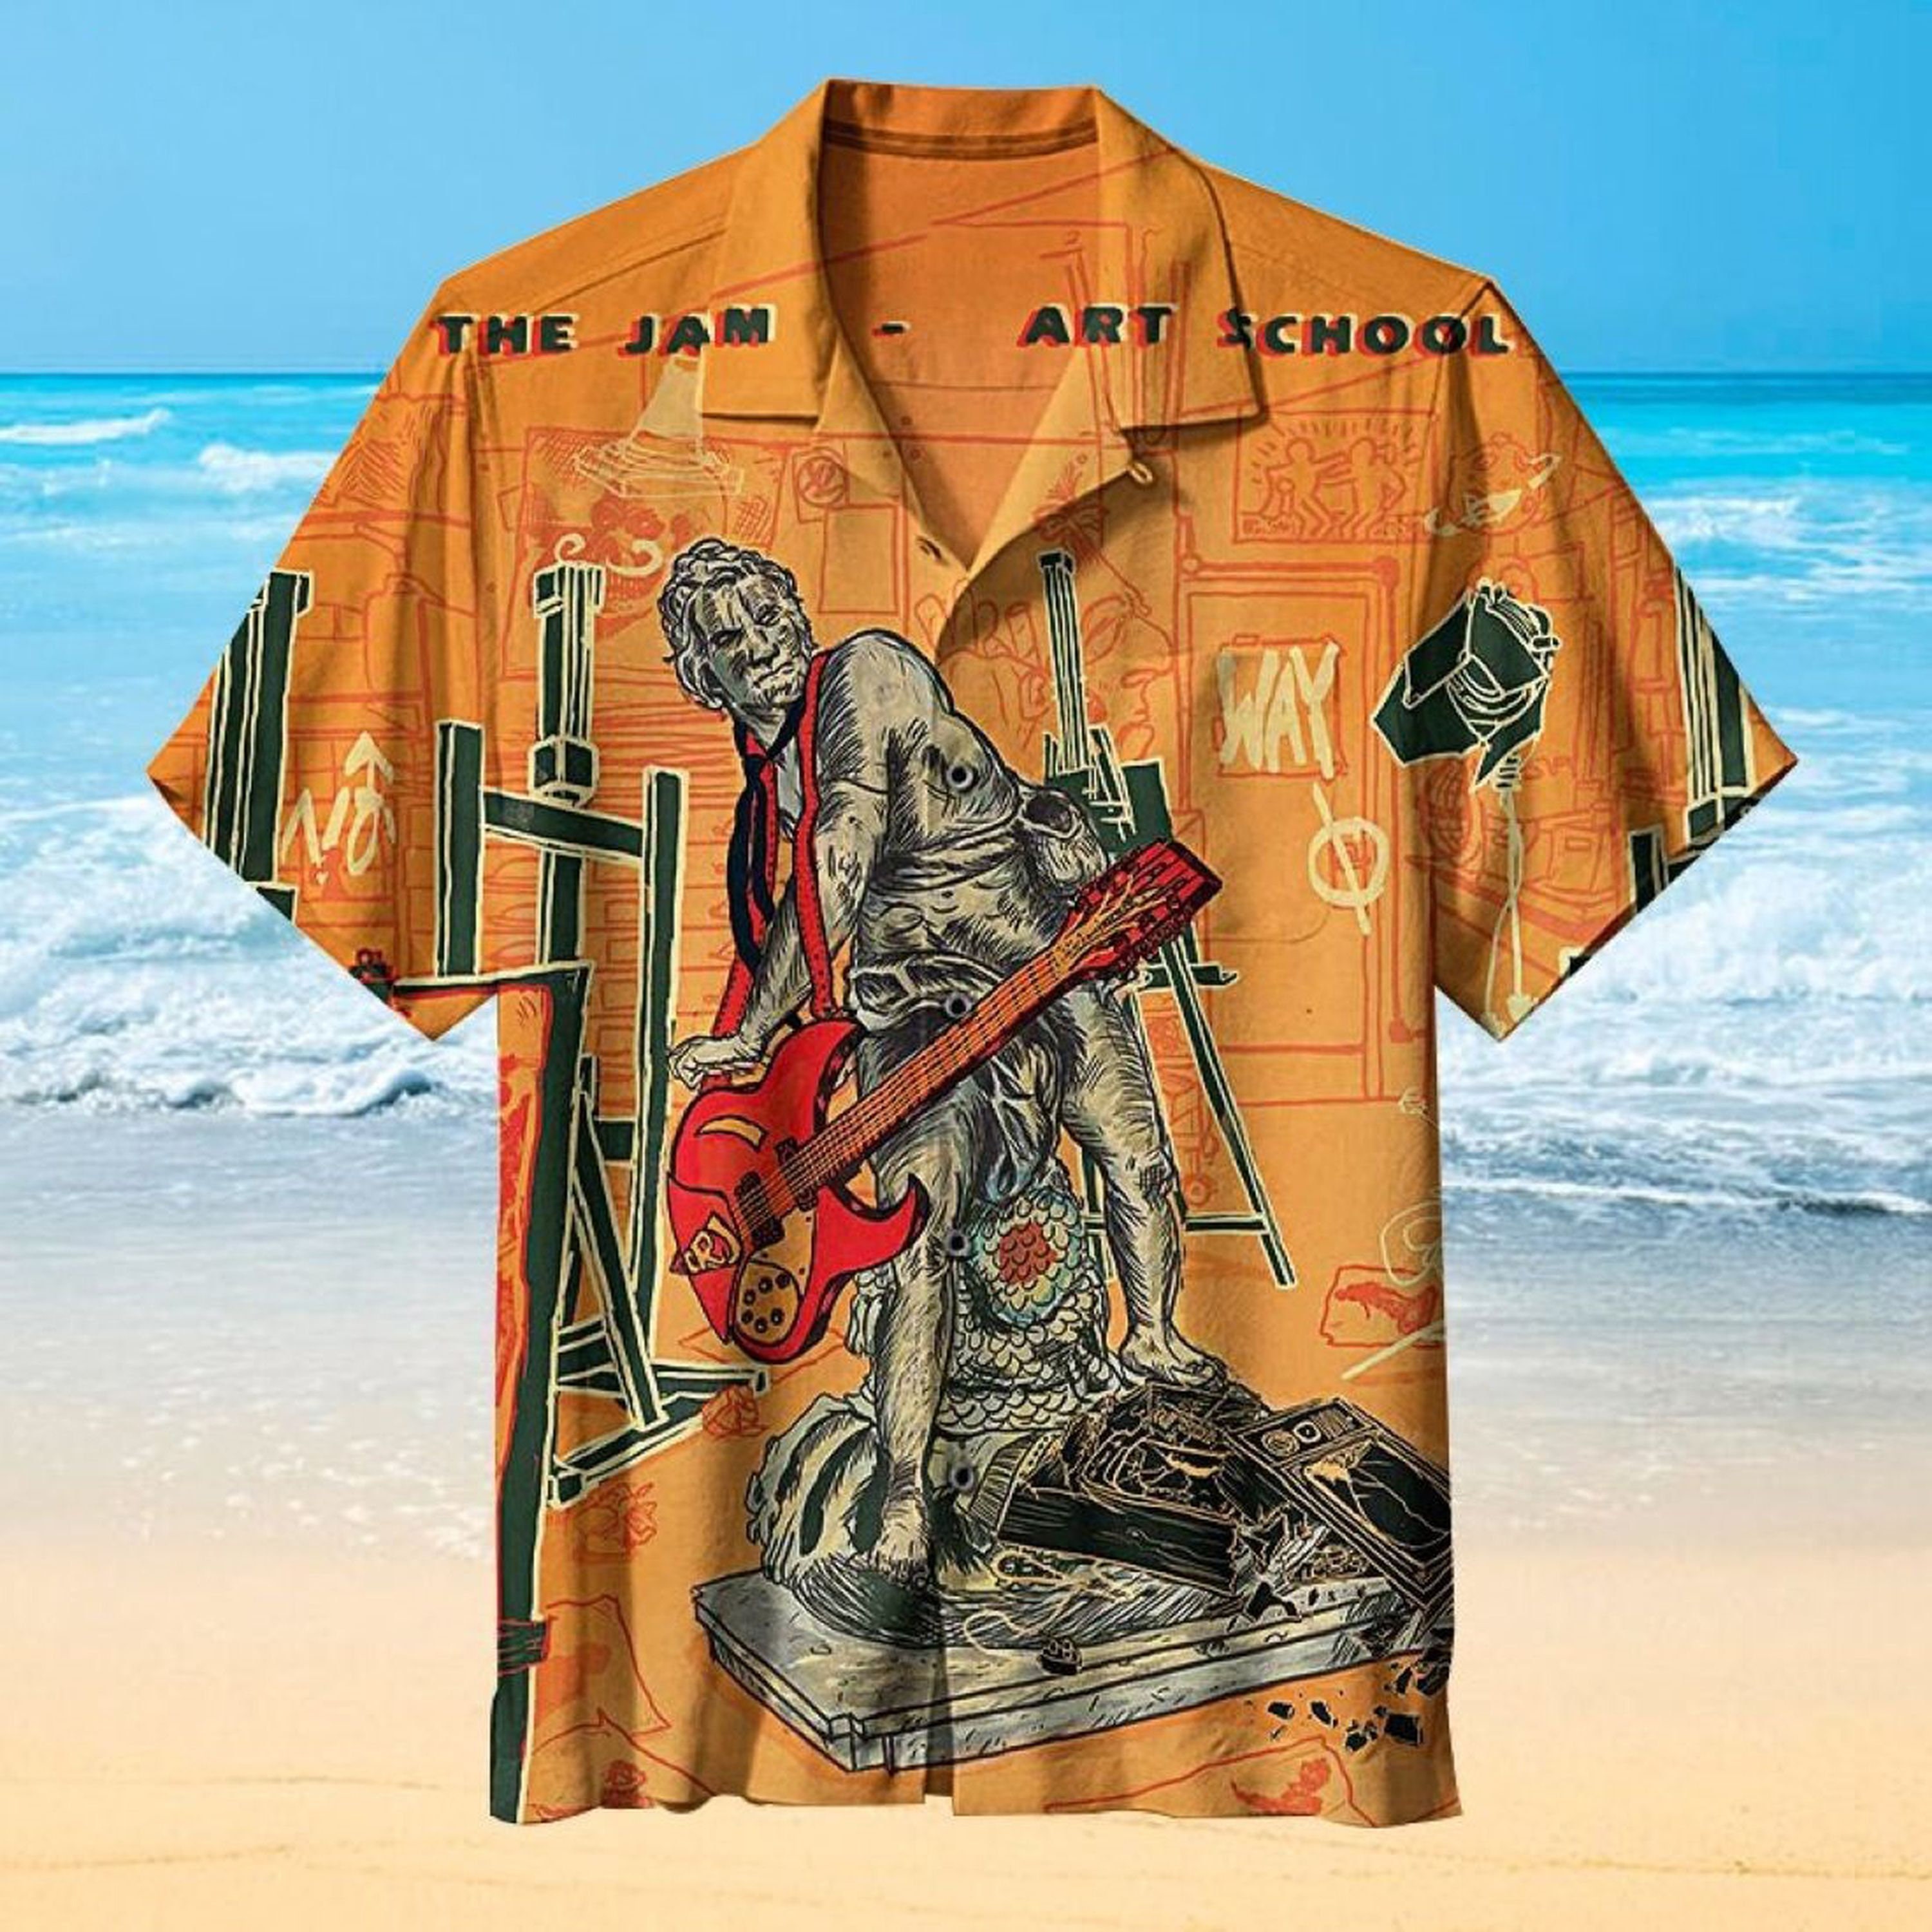 The Jam Art School Hawaiian Shirt For Hawaii Fans